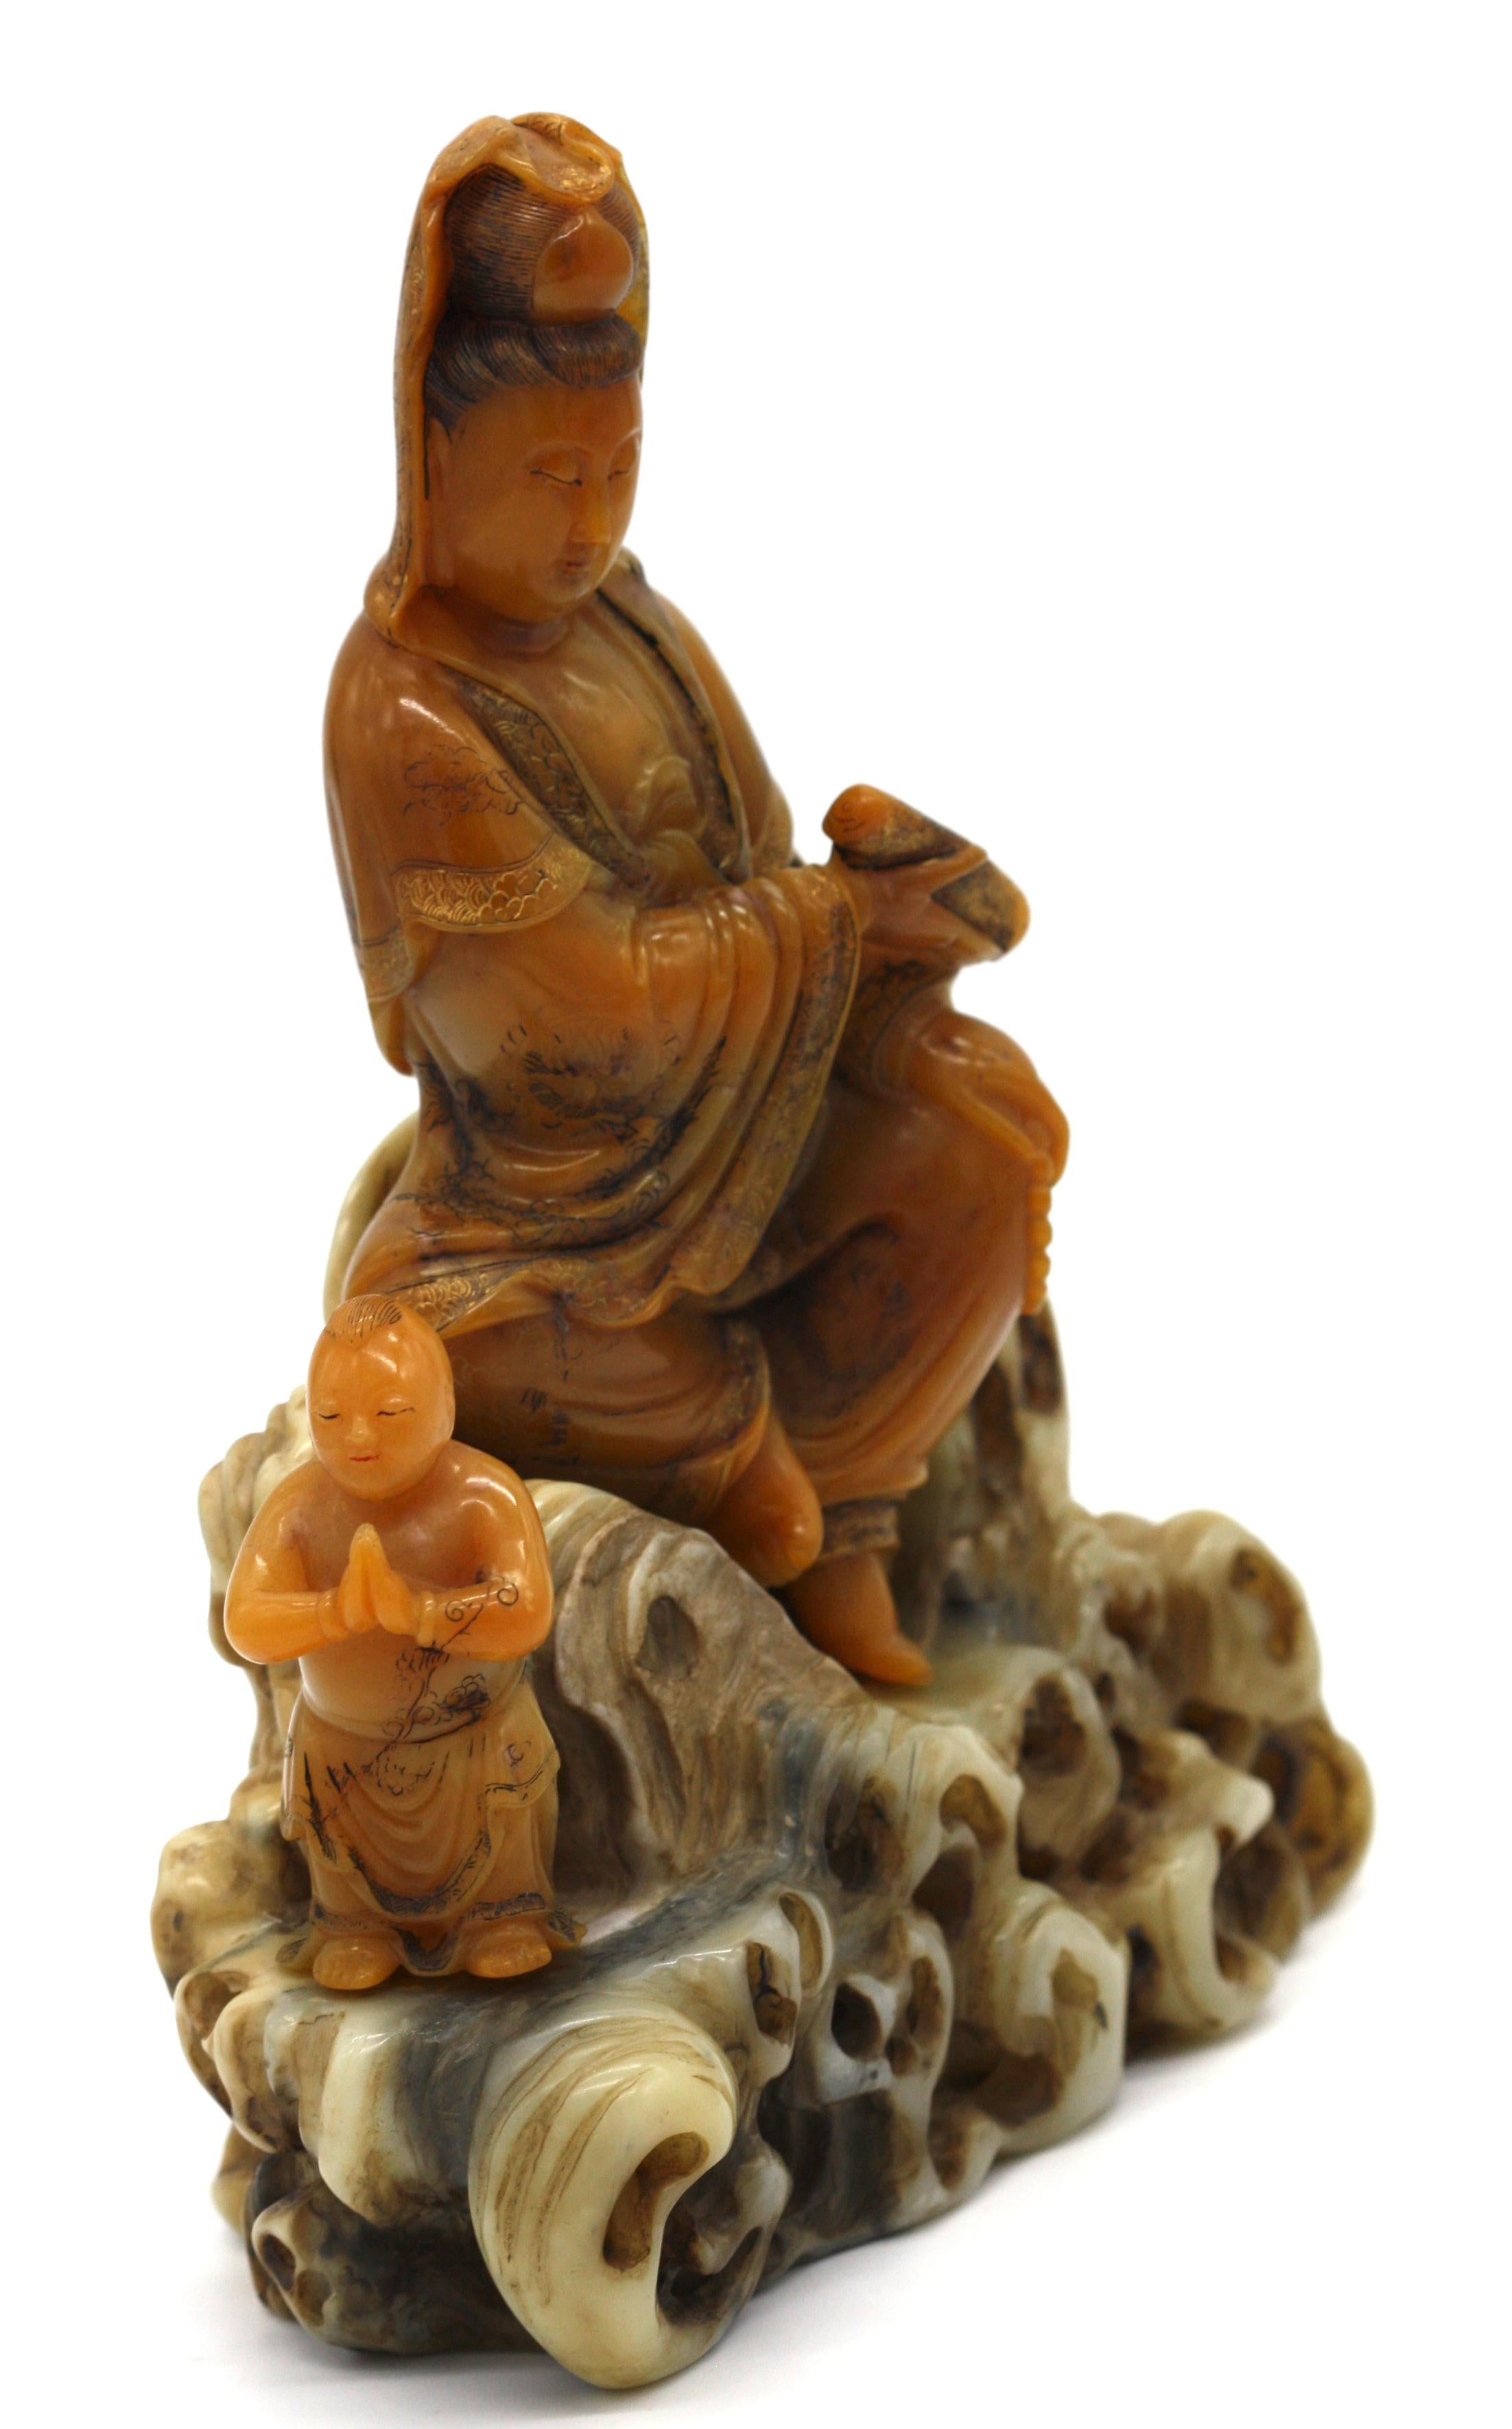 Figurine d'Avalokiteshvara en stéatite chinoise
sculptée assise à côté d'un garçon debout, vêtue d'une robe ample tombant en cascade et délicatement gravée de rinceaux, tenant un rouleau dans une main, son visage à l'expression bienveillante